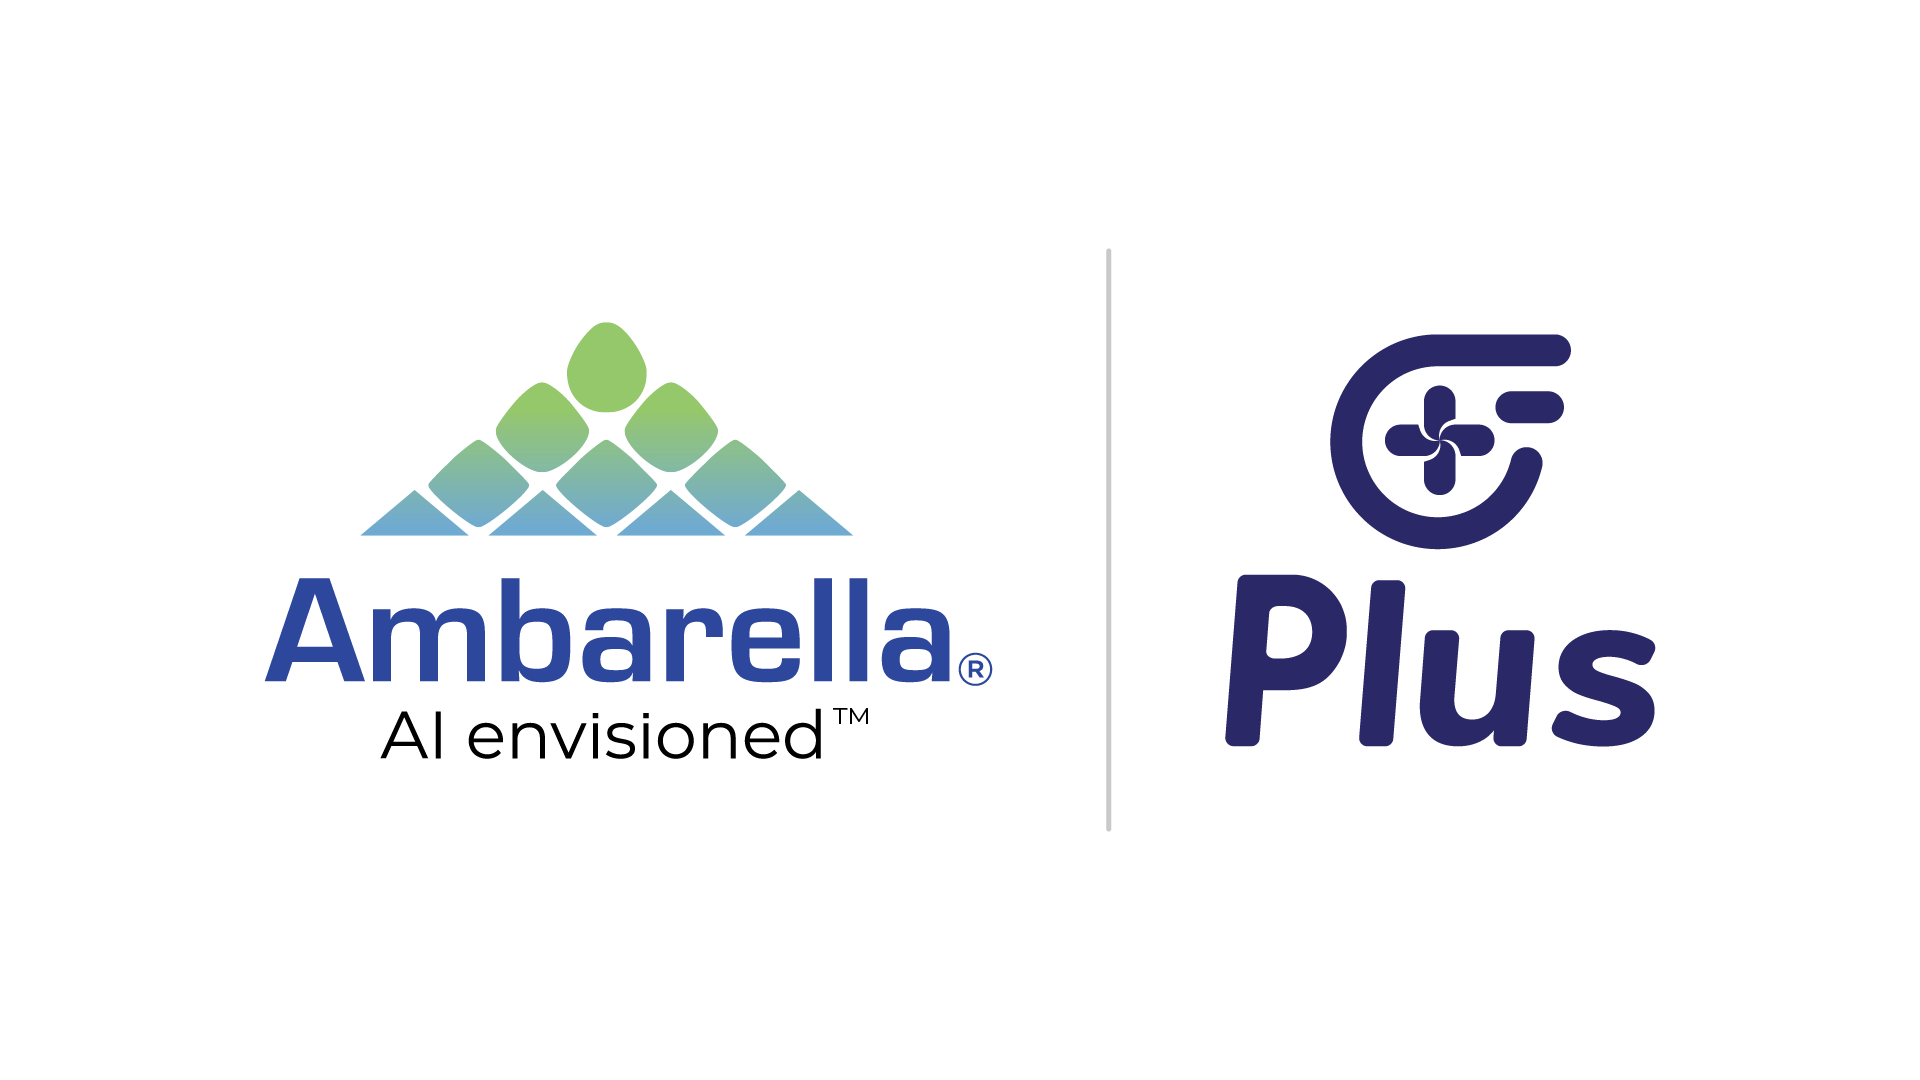 Plus-Ambarella Collaboration_Press Image